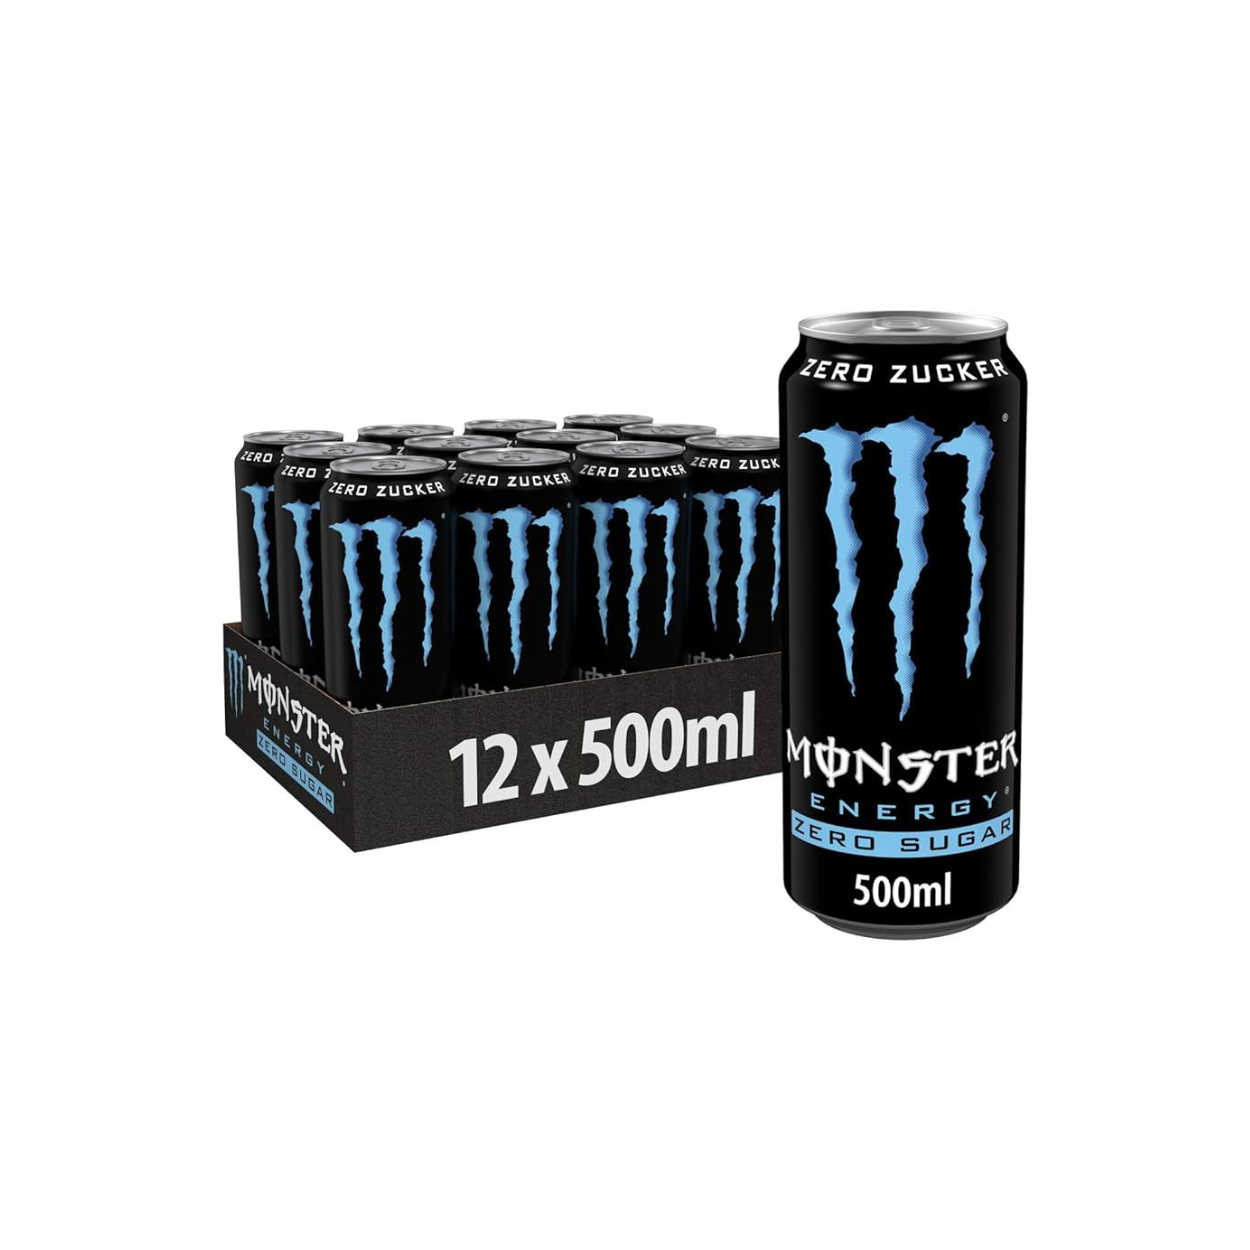 Monster Energy Monster Energy Zero Sugar (1-12x500ml)